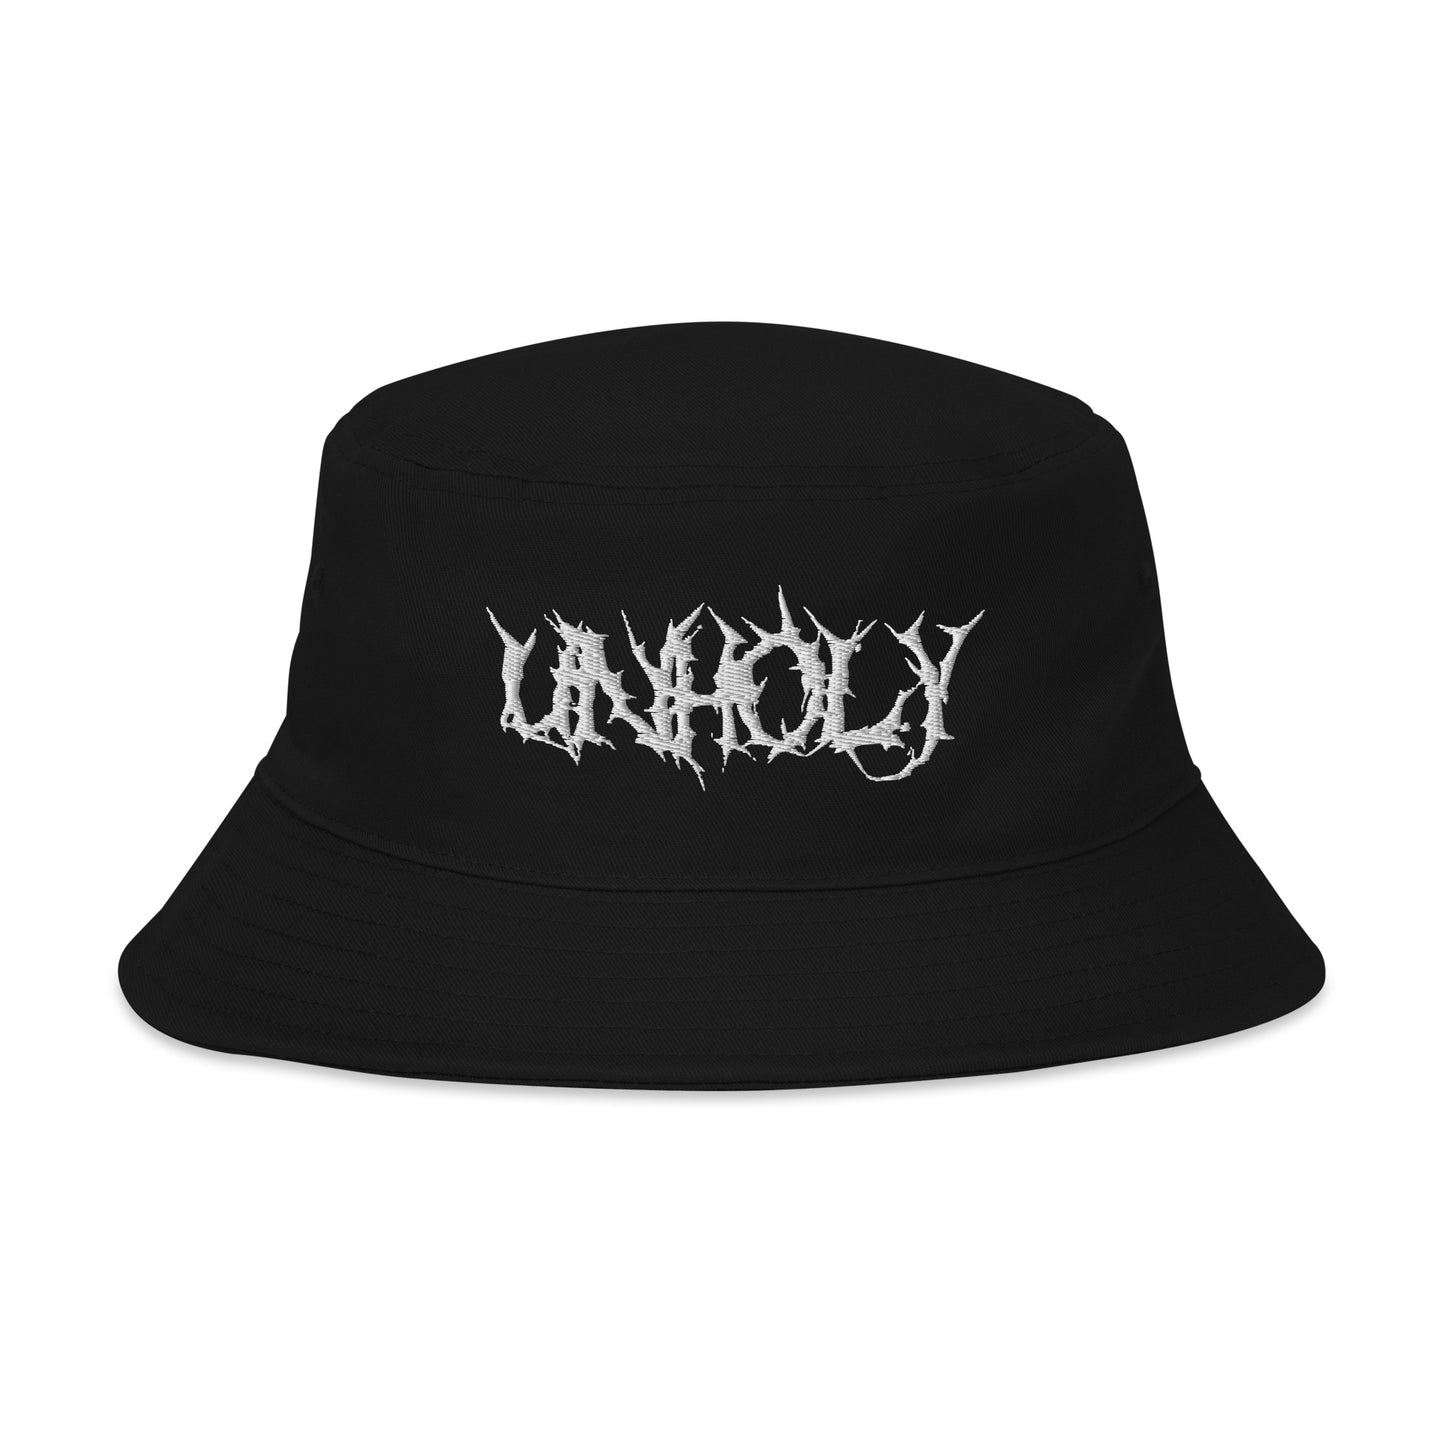 Unholy bucket hat